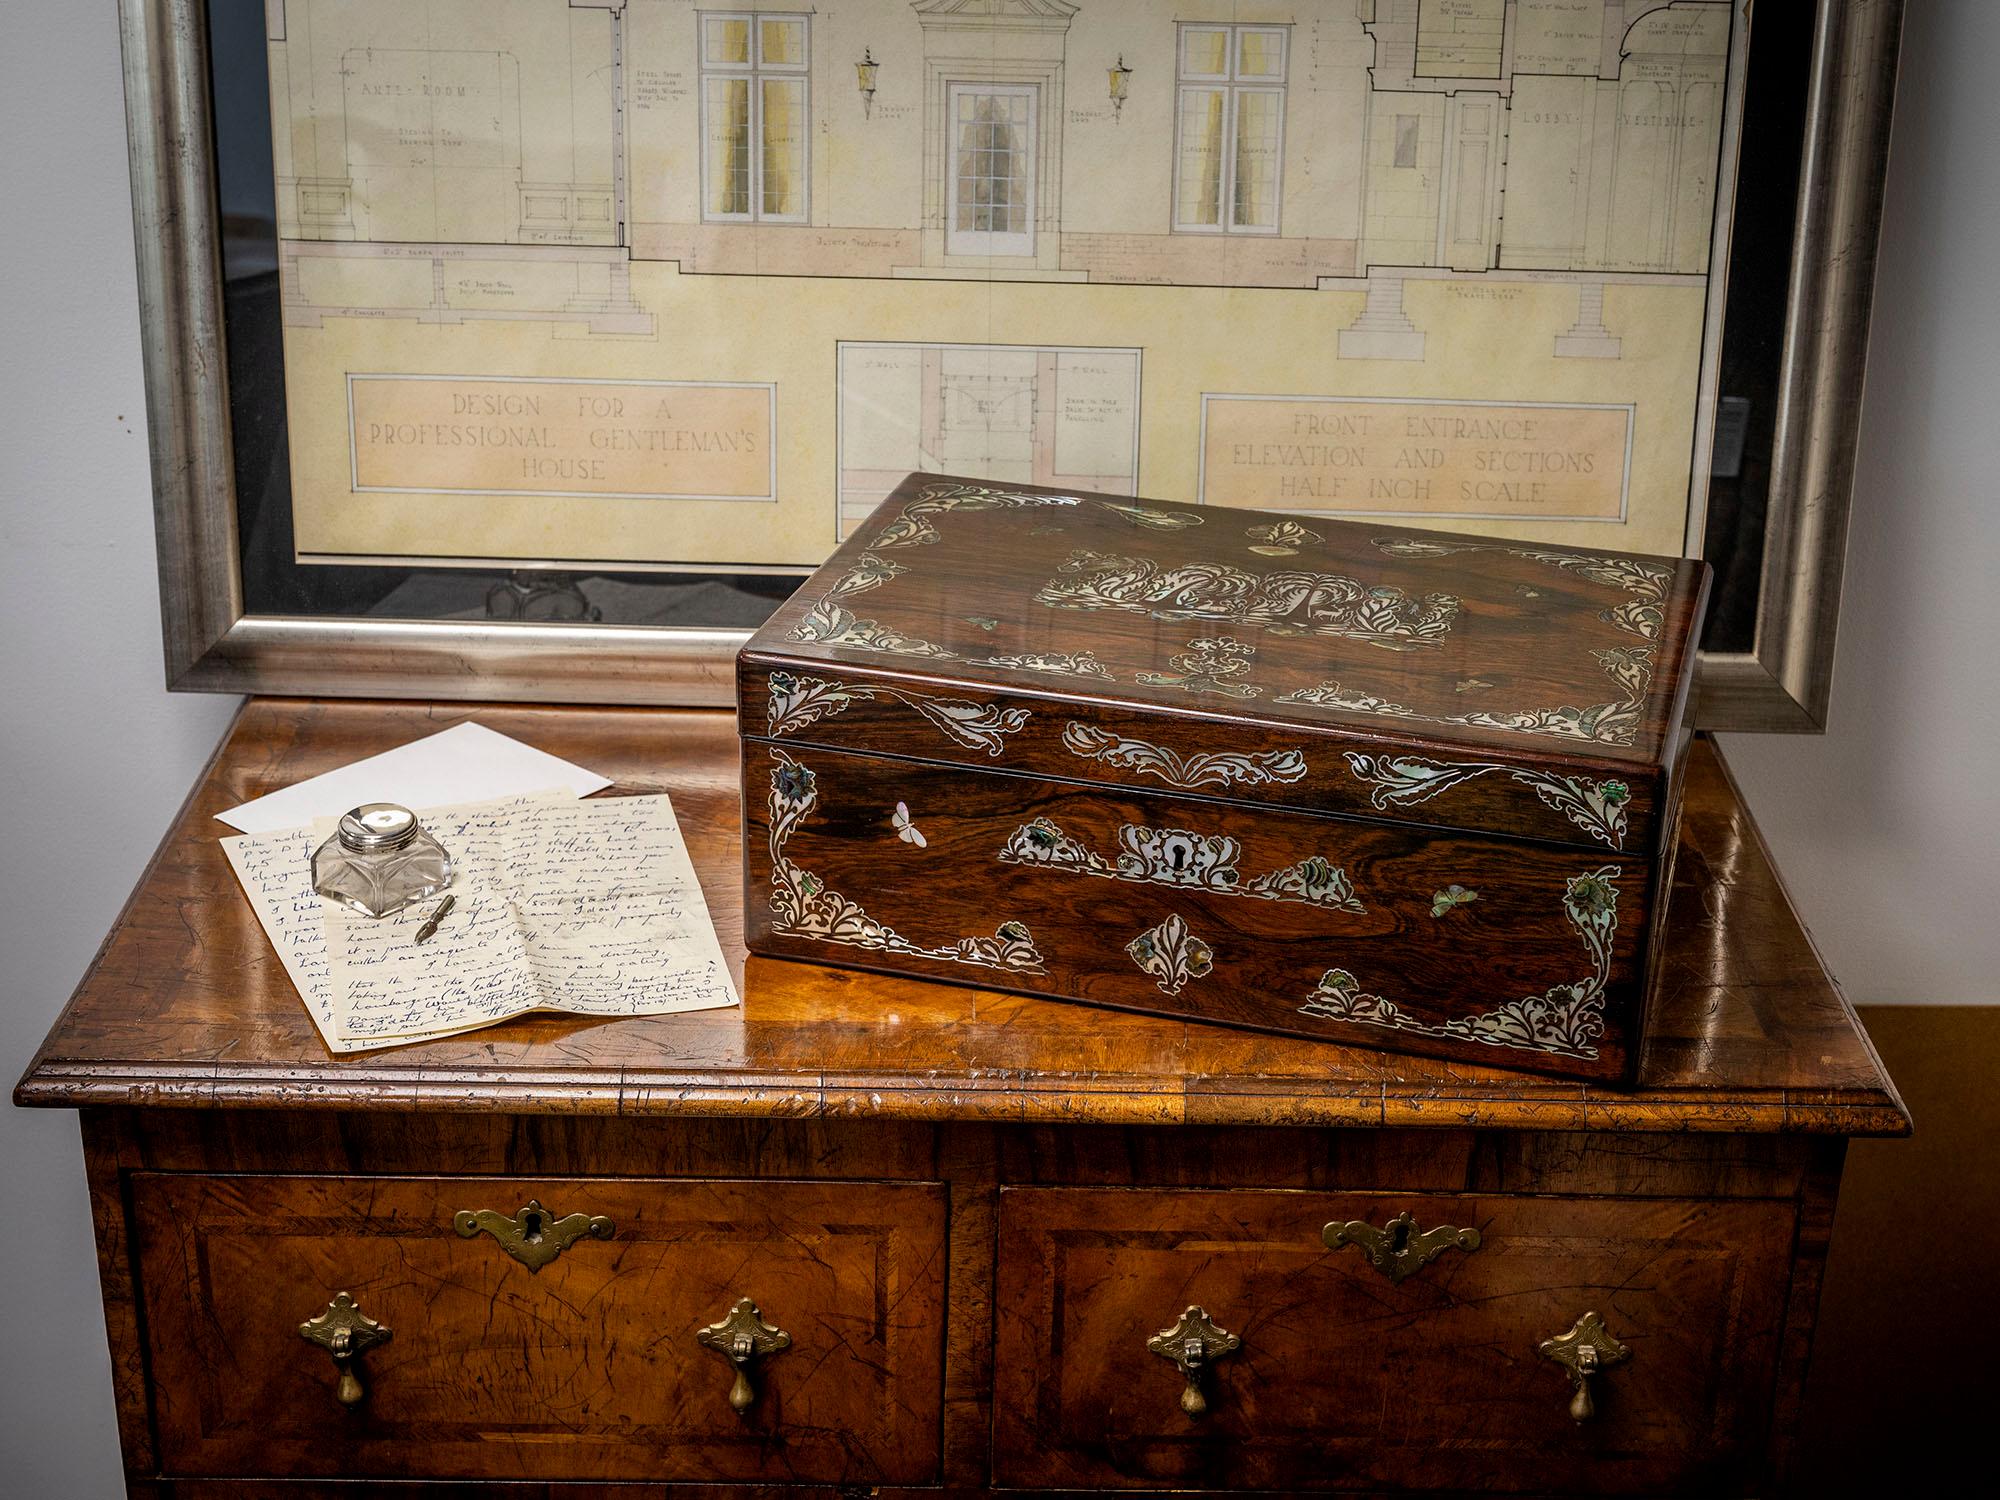 Sicherlich Hausburg zuzuschreiben

Wir freuen uns, Ihnen diese antike viktorianische Schreibbox aus unserer Collection'S anbieten zu können, die der Firma Hausburg zugeschrieben wird. Die rechteckige Schreibschachtel aus Palisanderholz ist mit